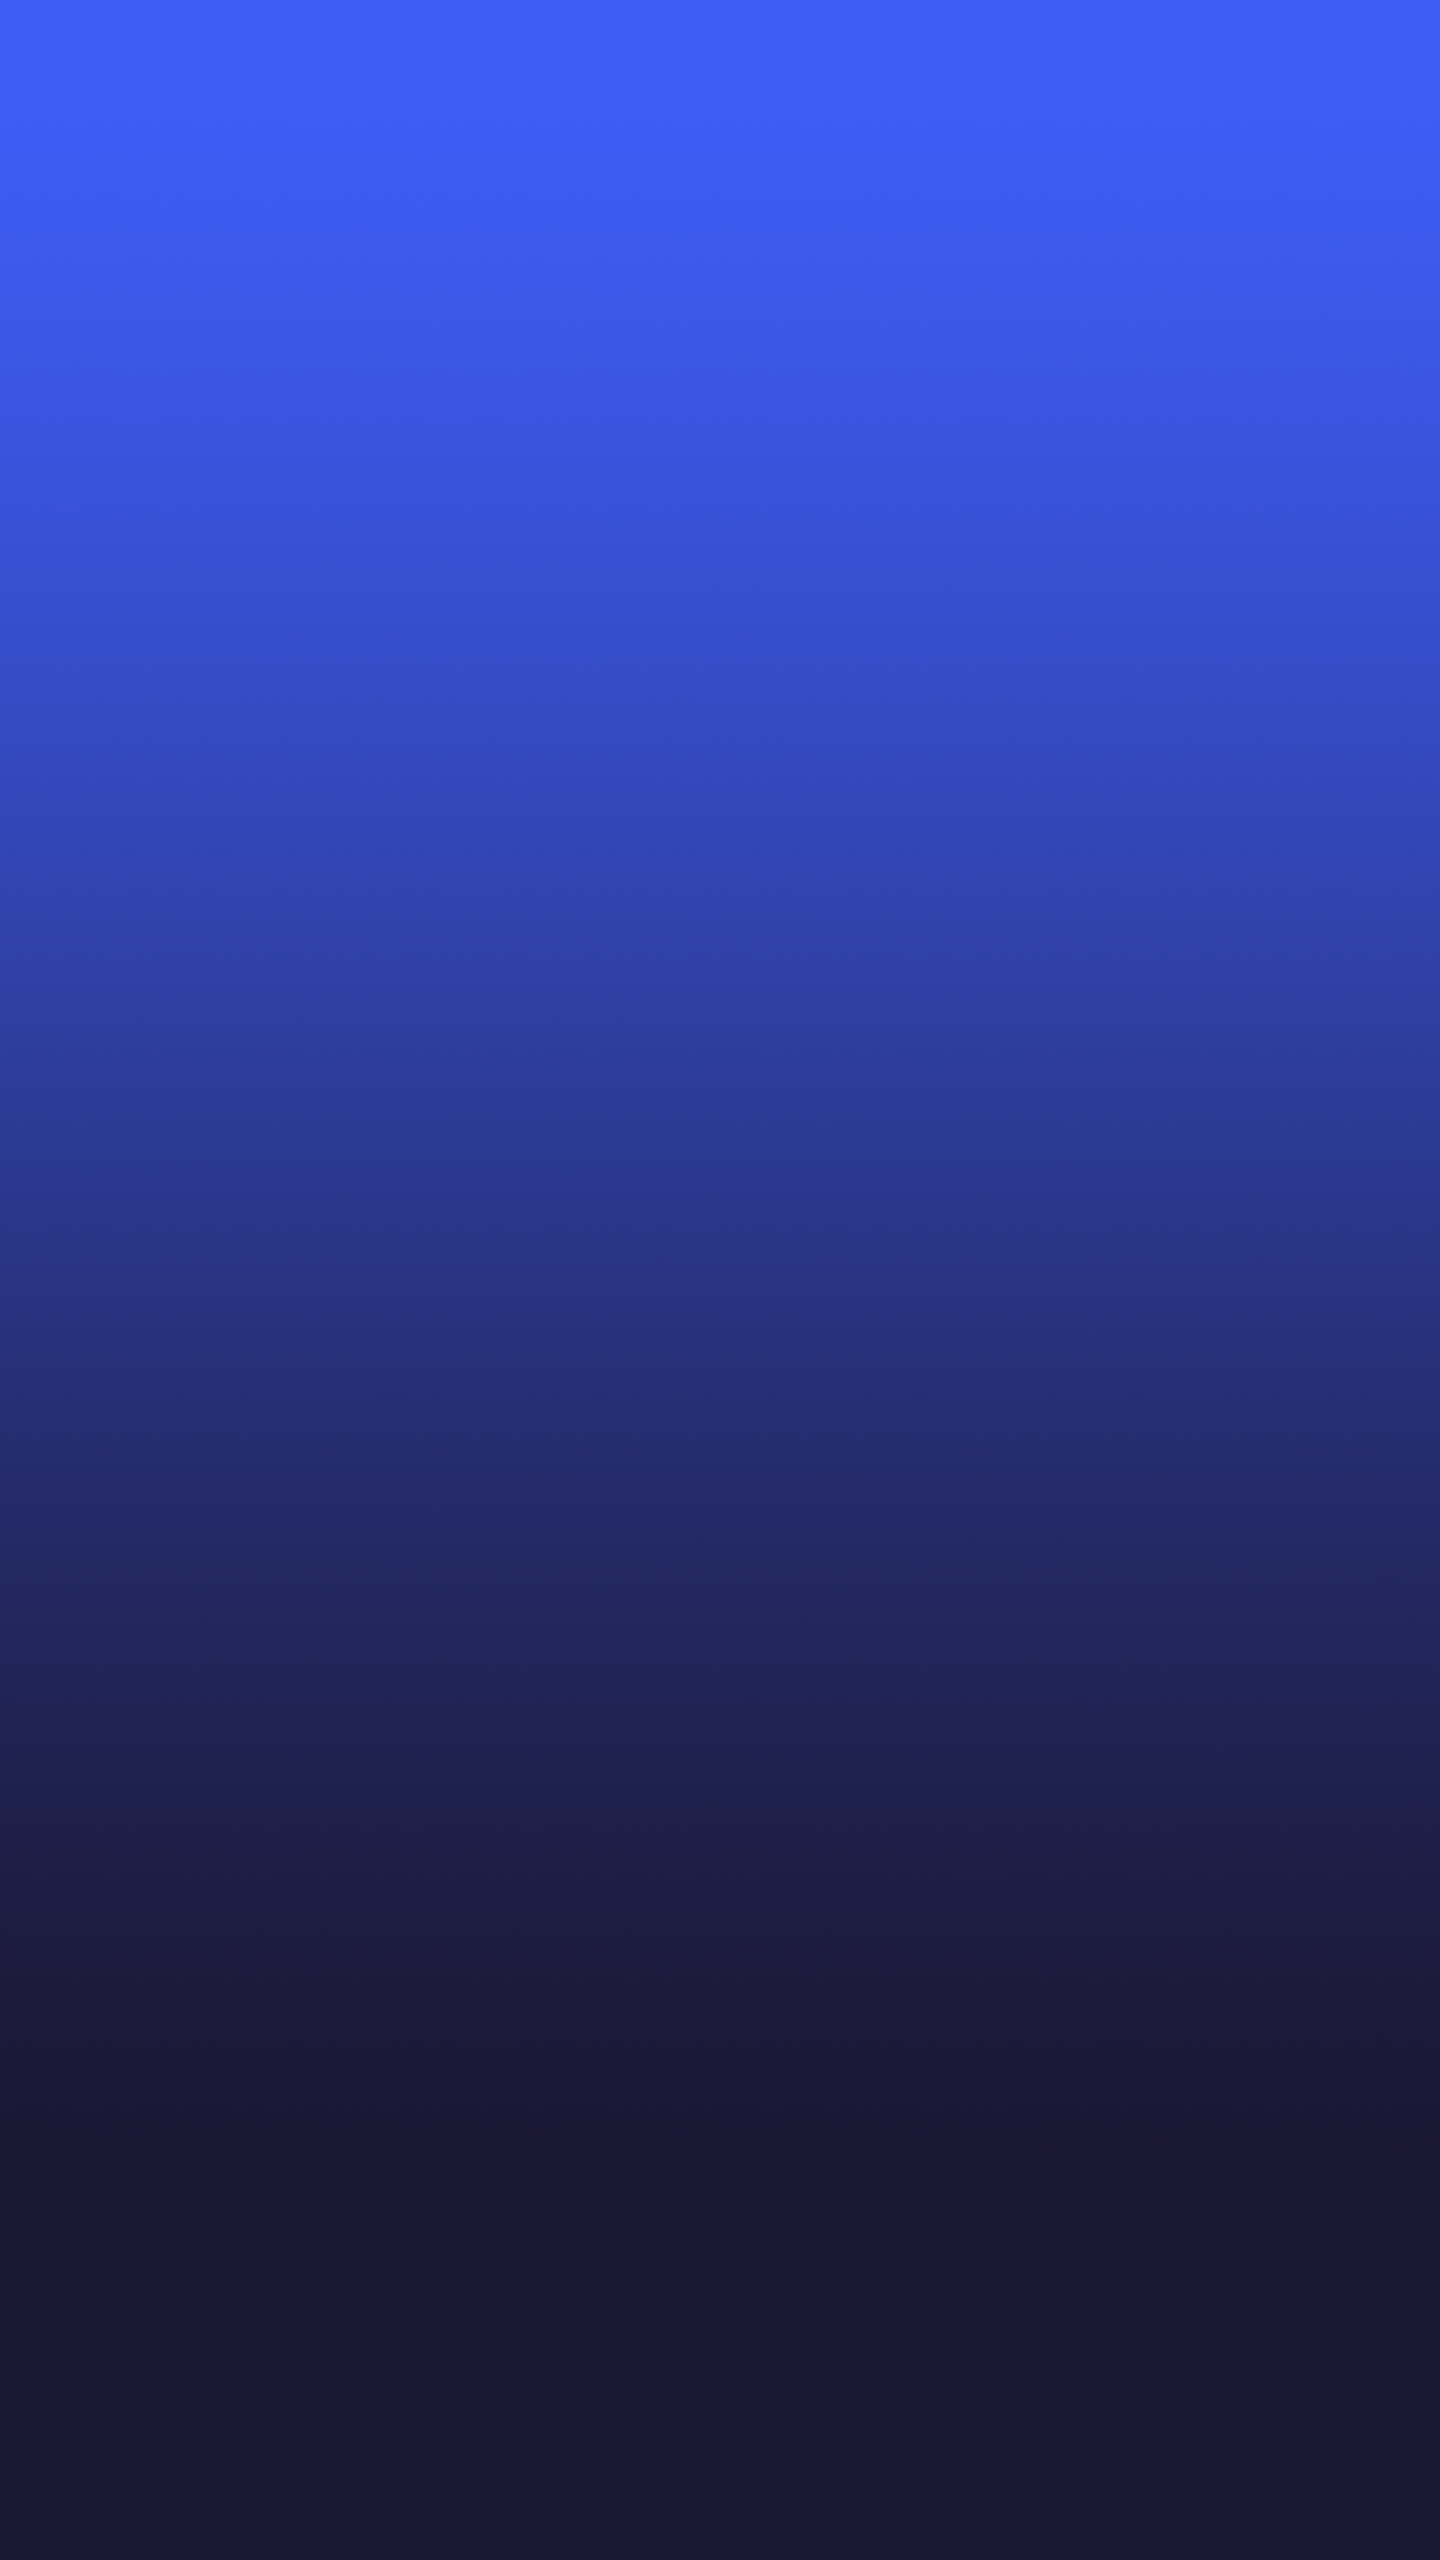 삼성 갤럭시 s8 벽지,푸른,제비꽃,보라색,짙은 청록색,검정